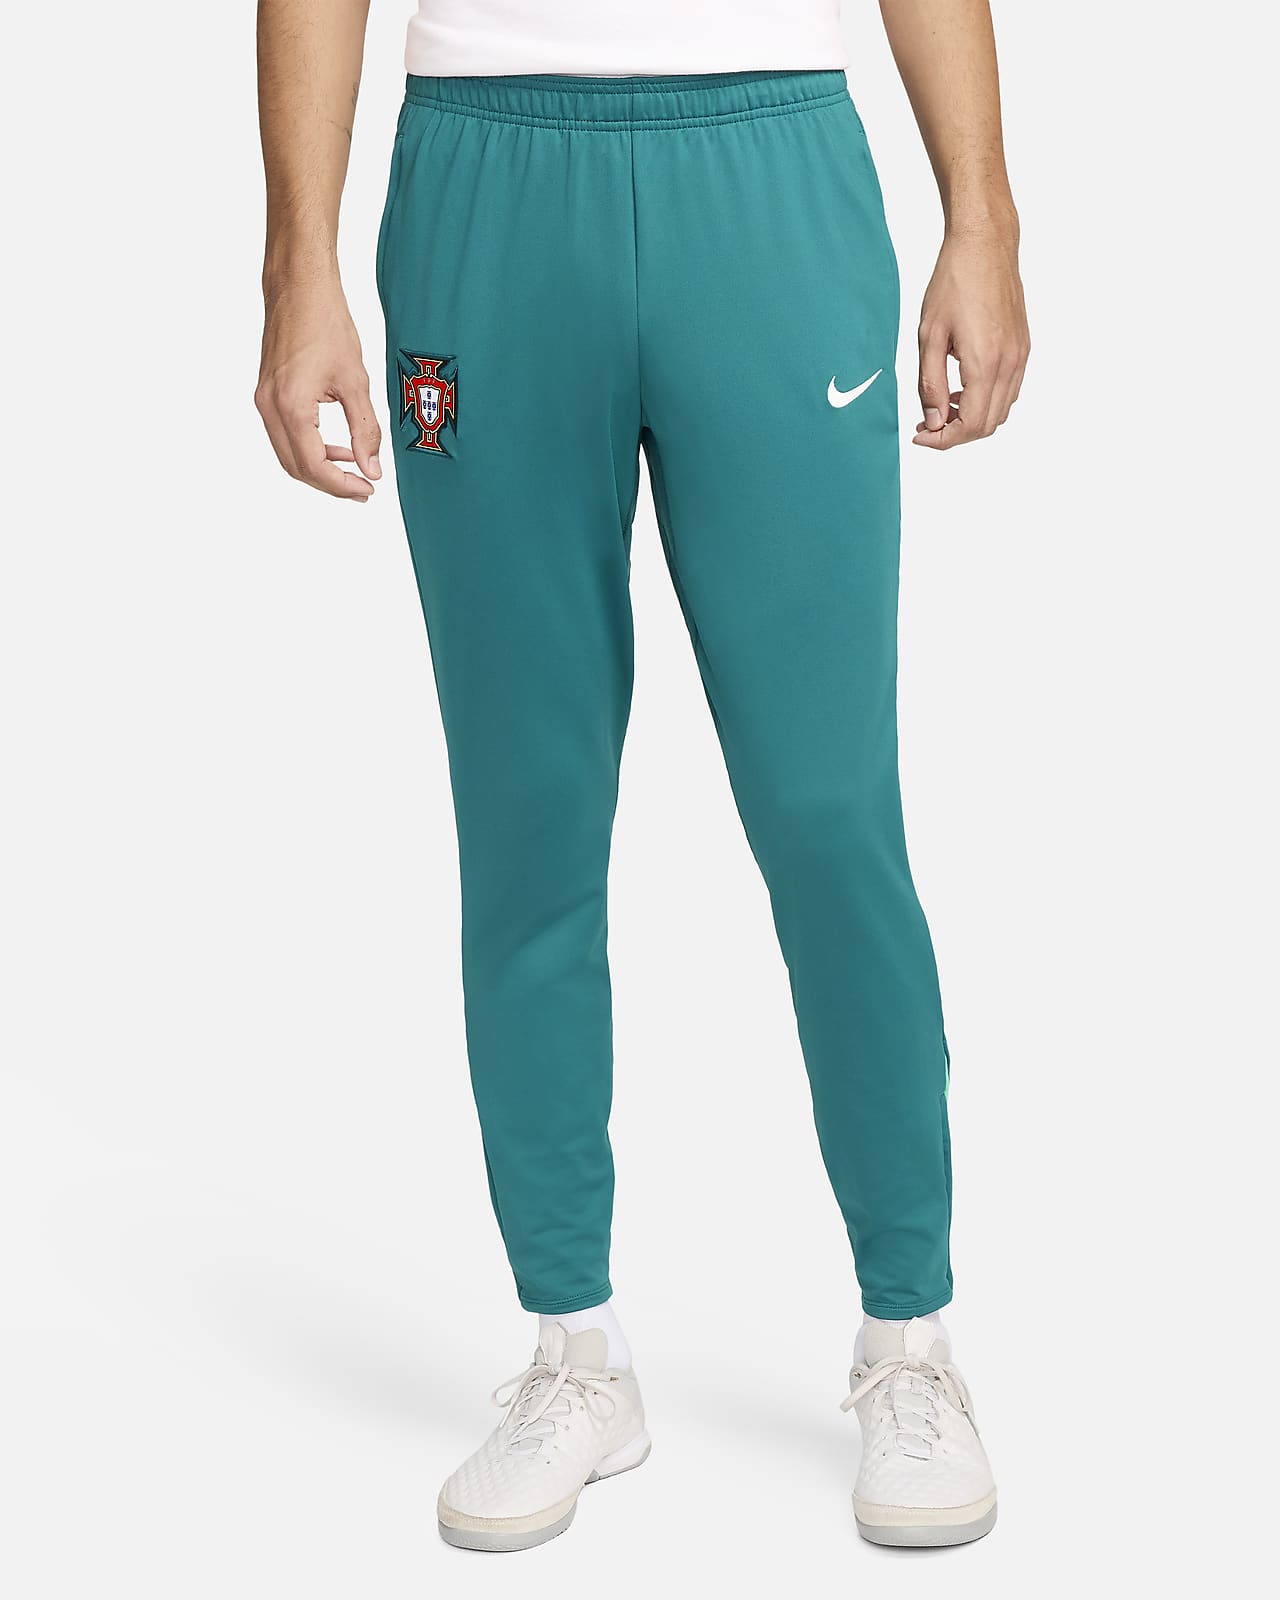 Ανδρικό ποδοσφαιρικό πλεκτό παντελόνι Πορτογαλία Nike Dri-FIT Strike